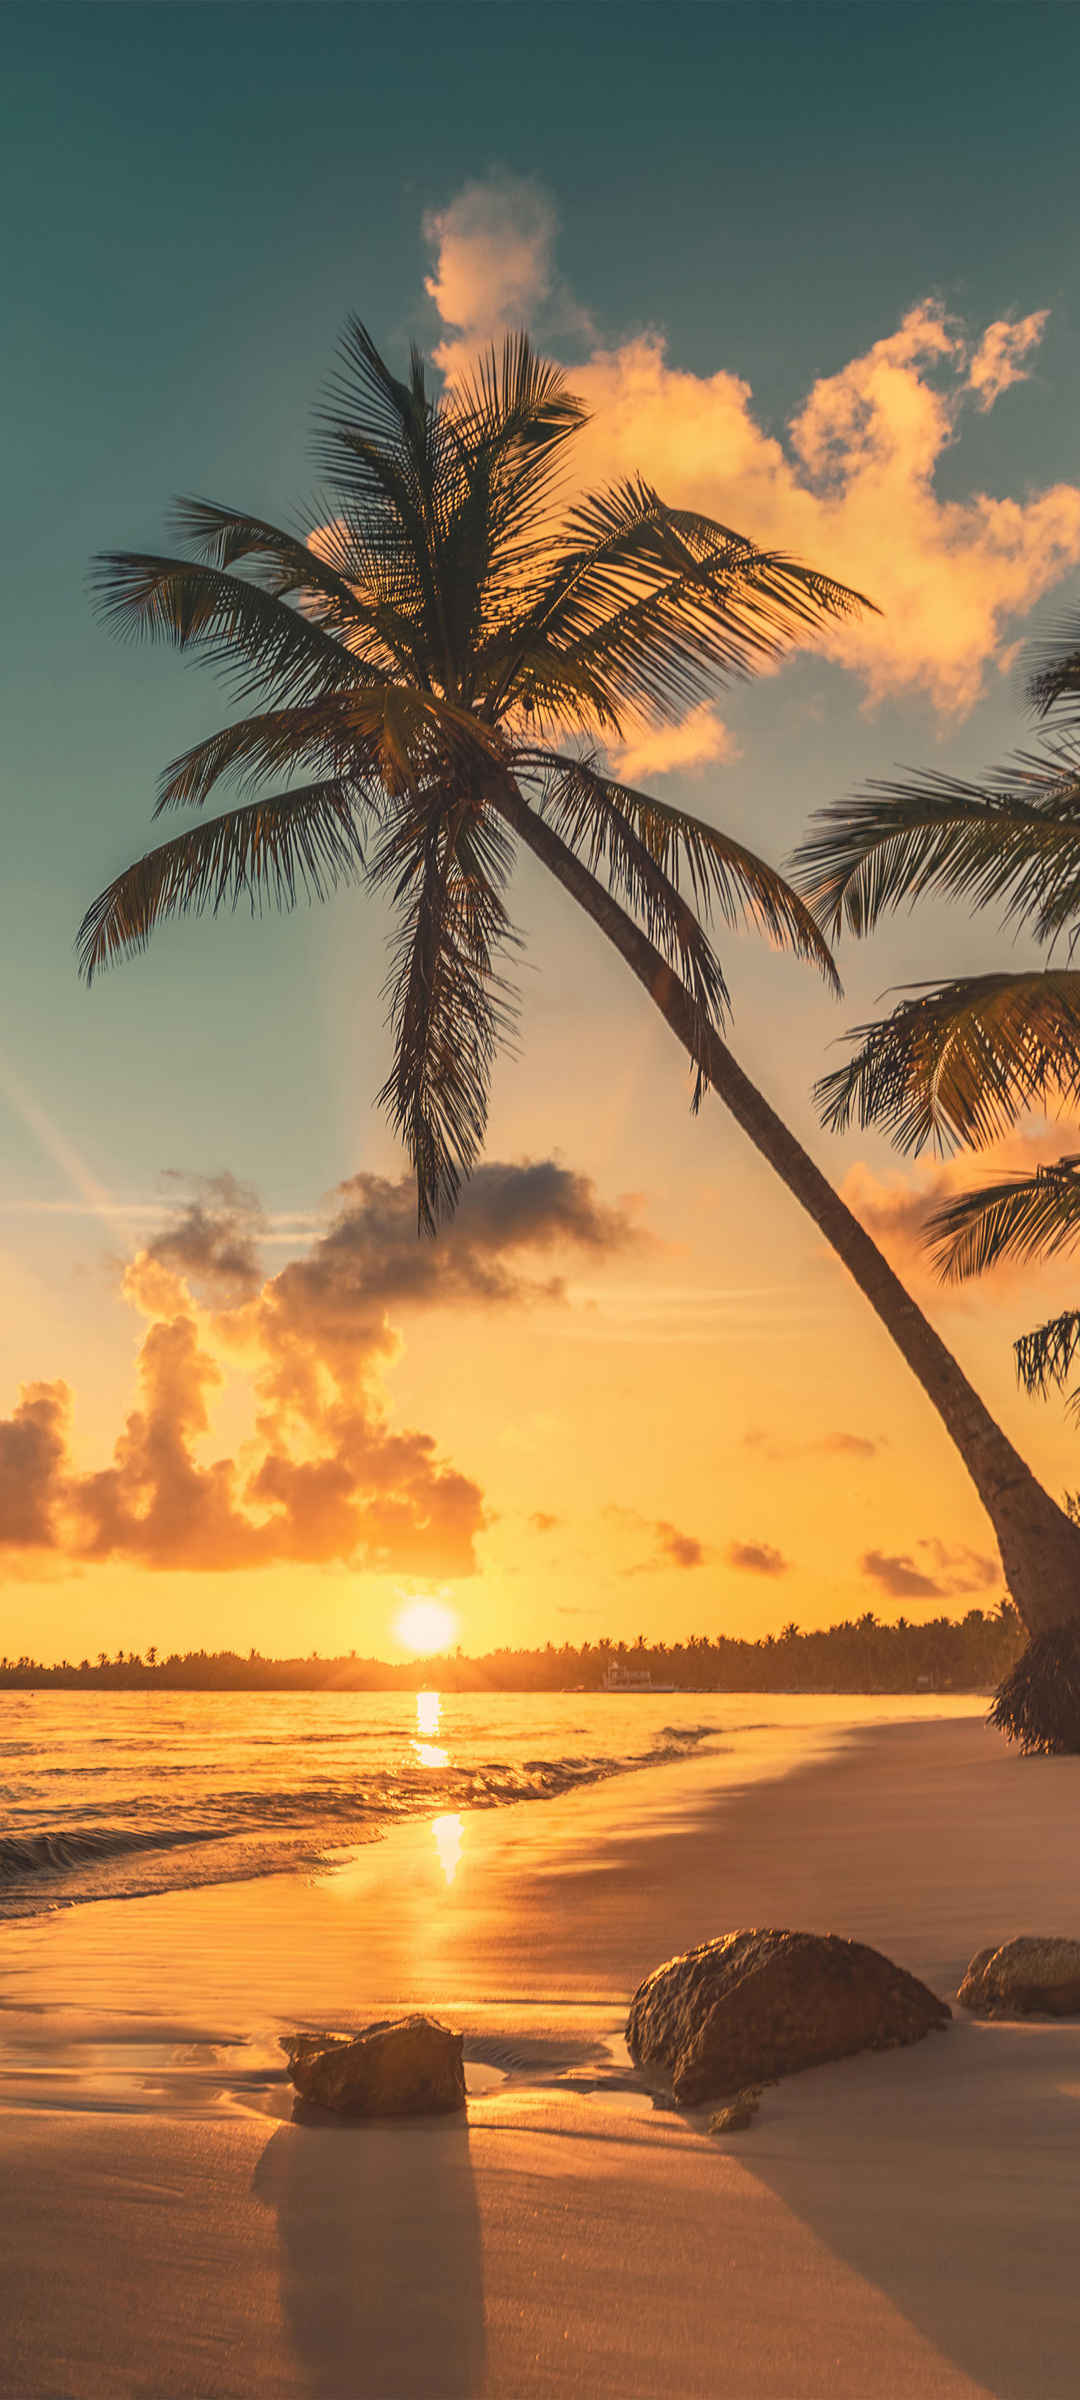  海边 沙滩 日落 夕阳 椰树 风景手机图片